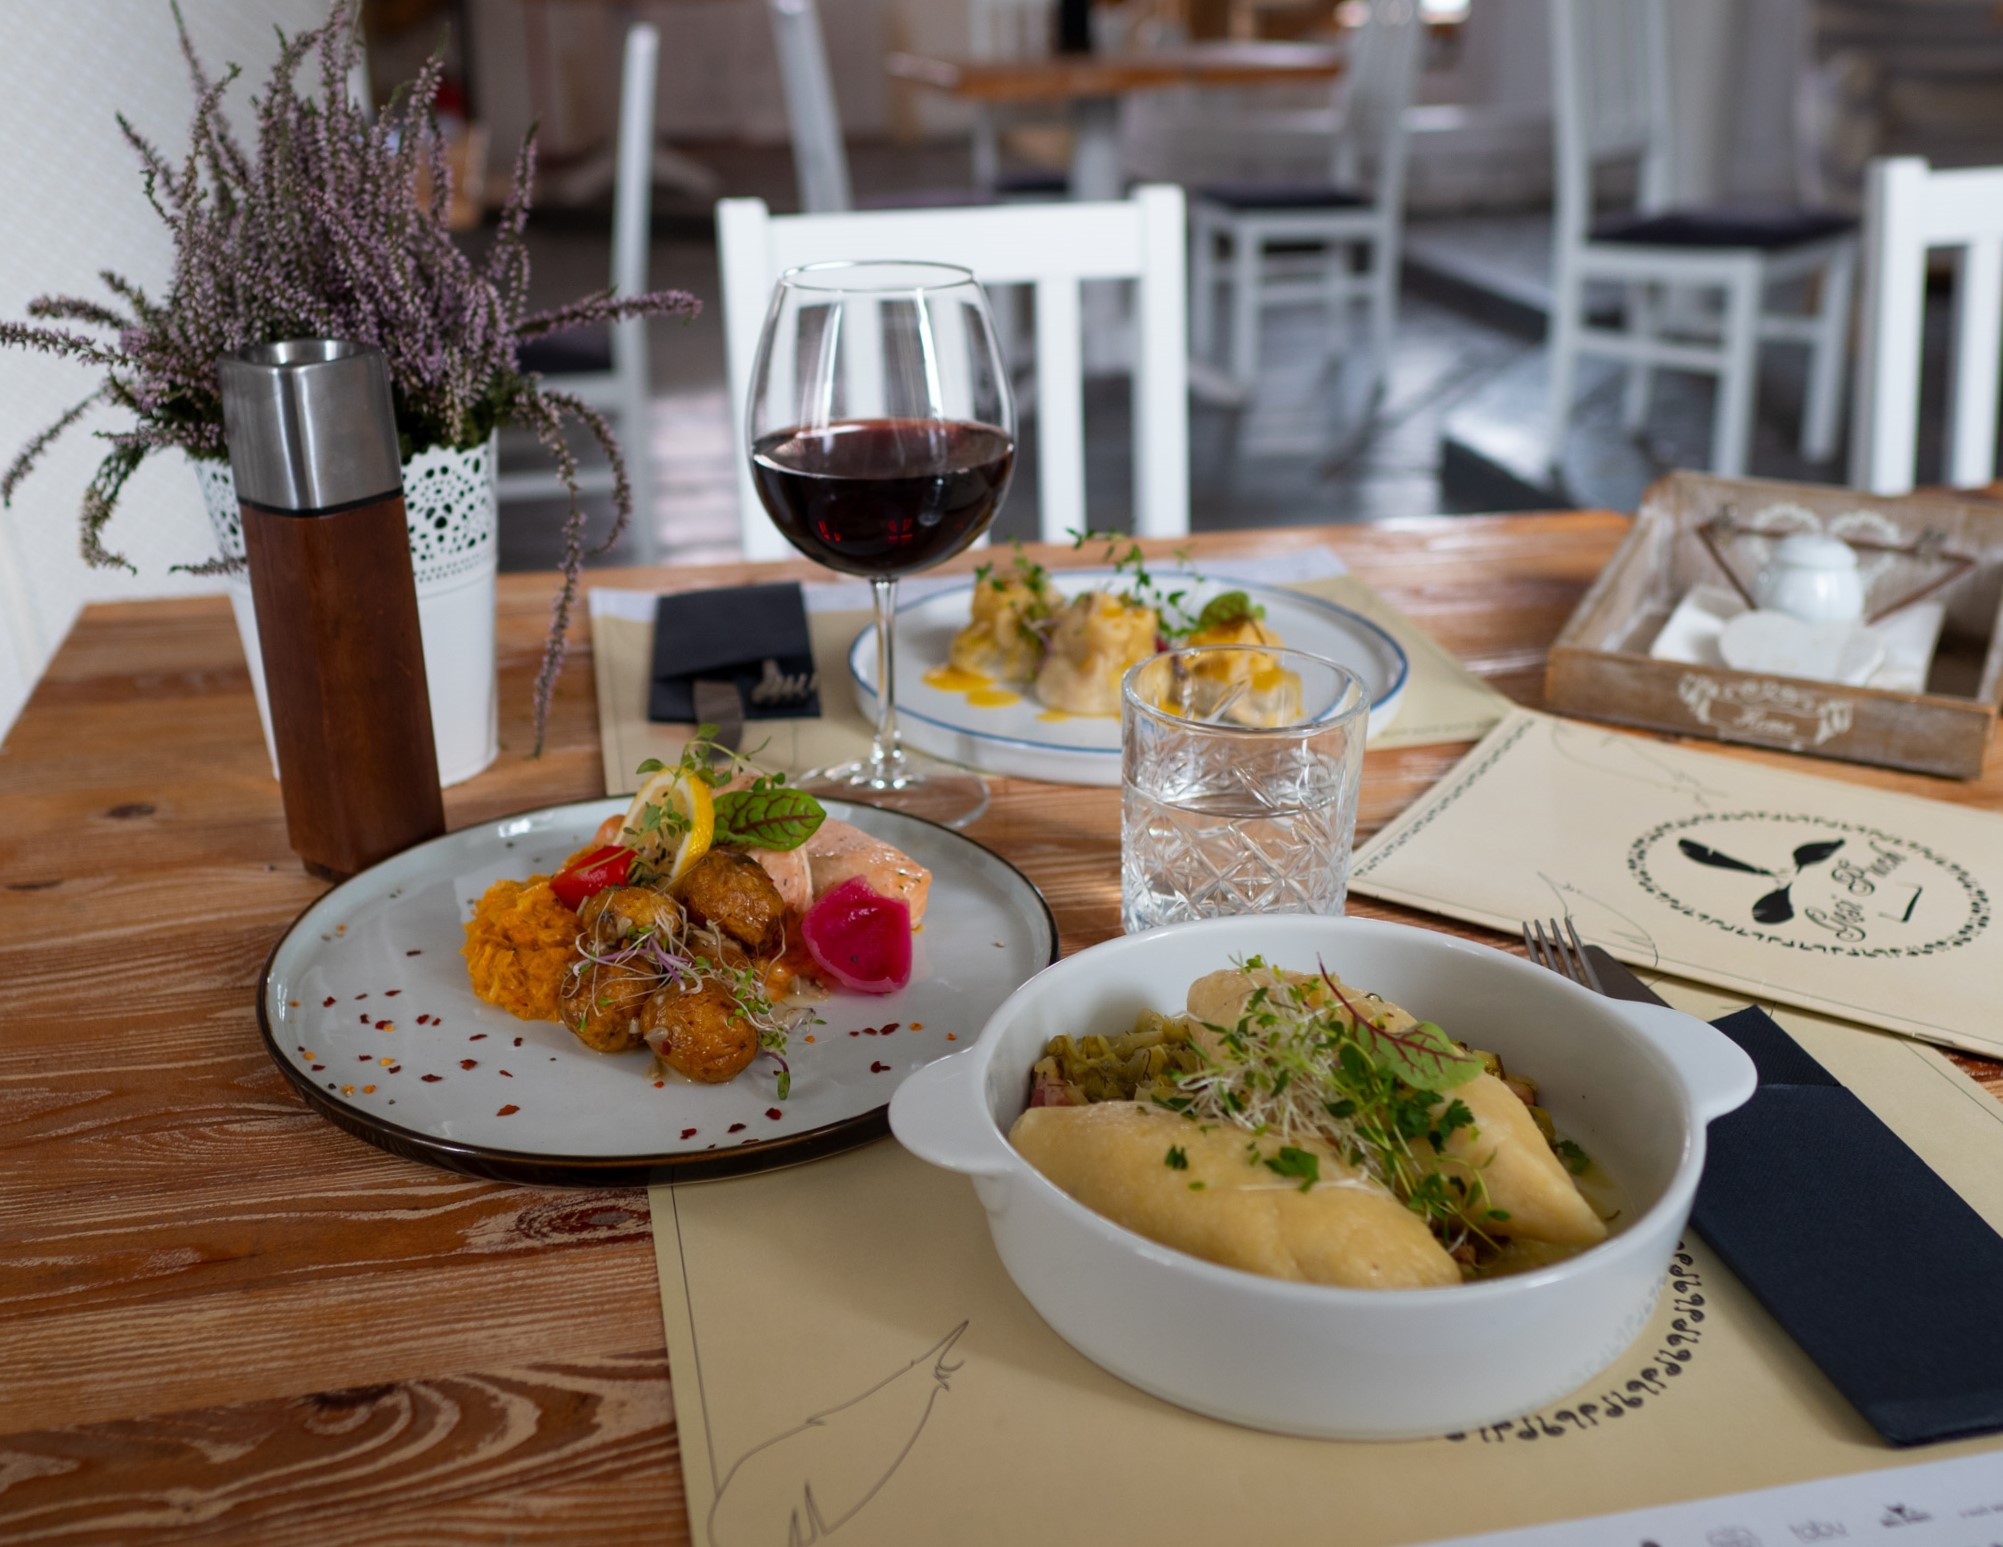 Na zdjęciu widać stół eleganckiej restauracji zastawiony talerzami z daniami i napojami.